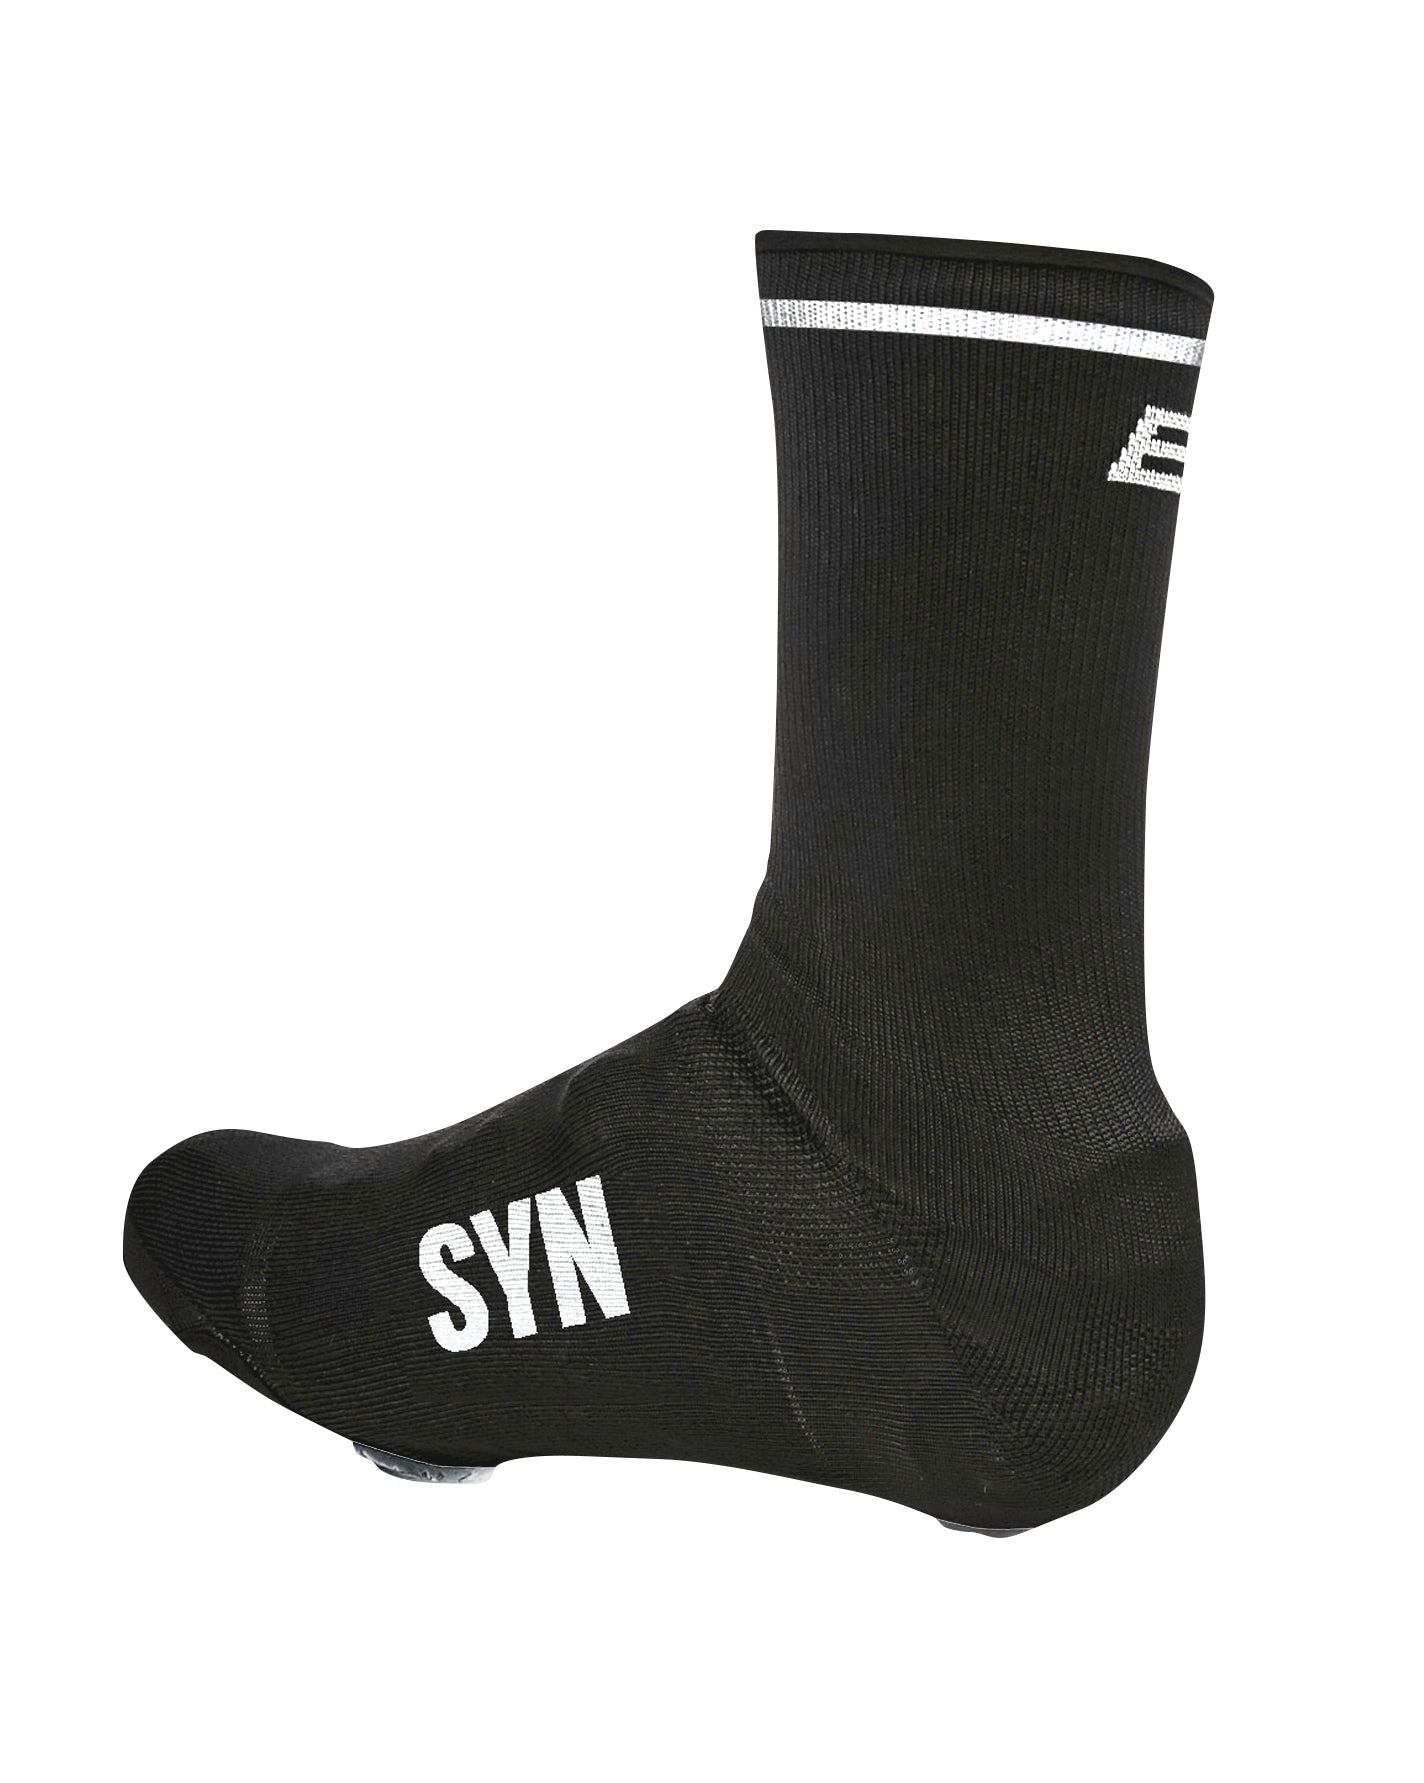 Syndicate Over Socks